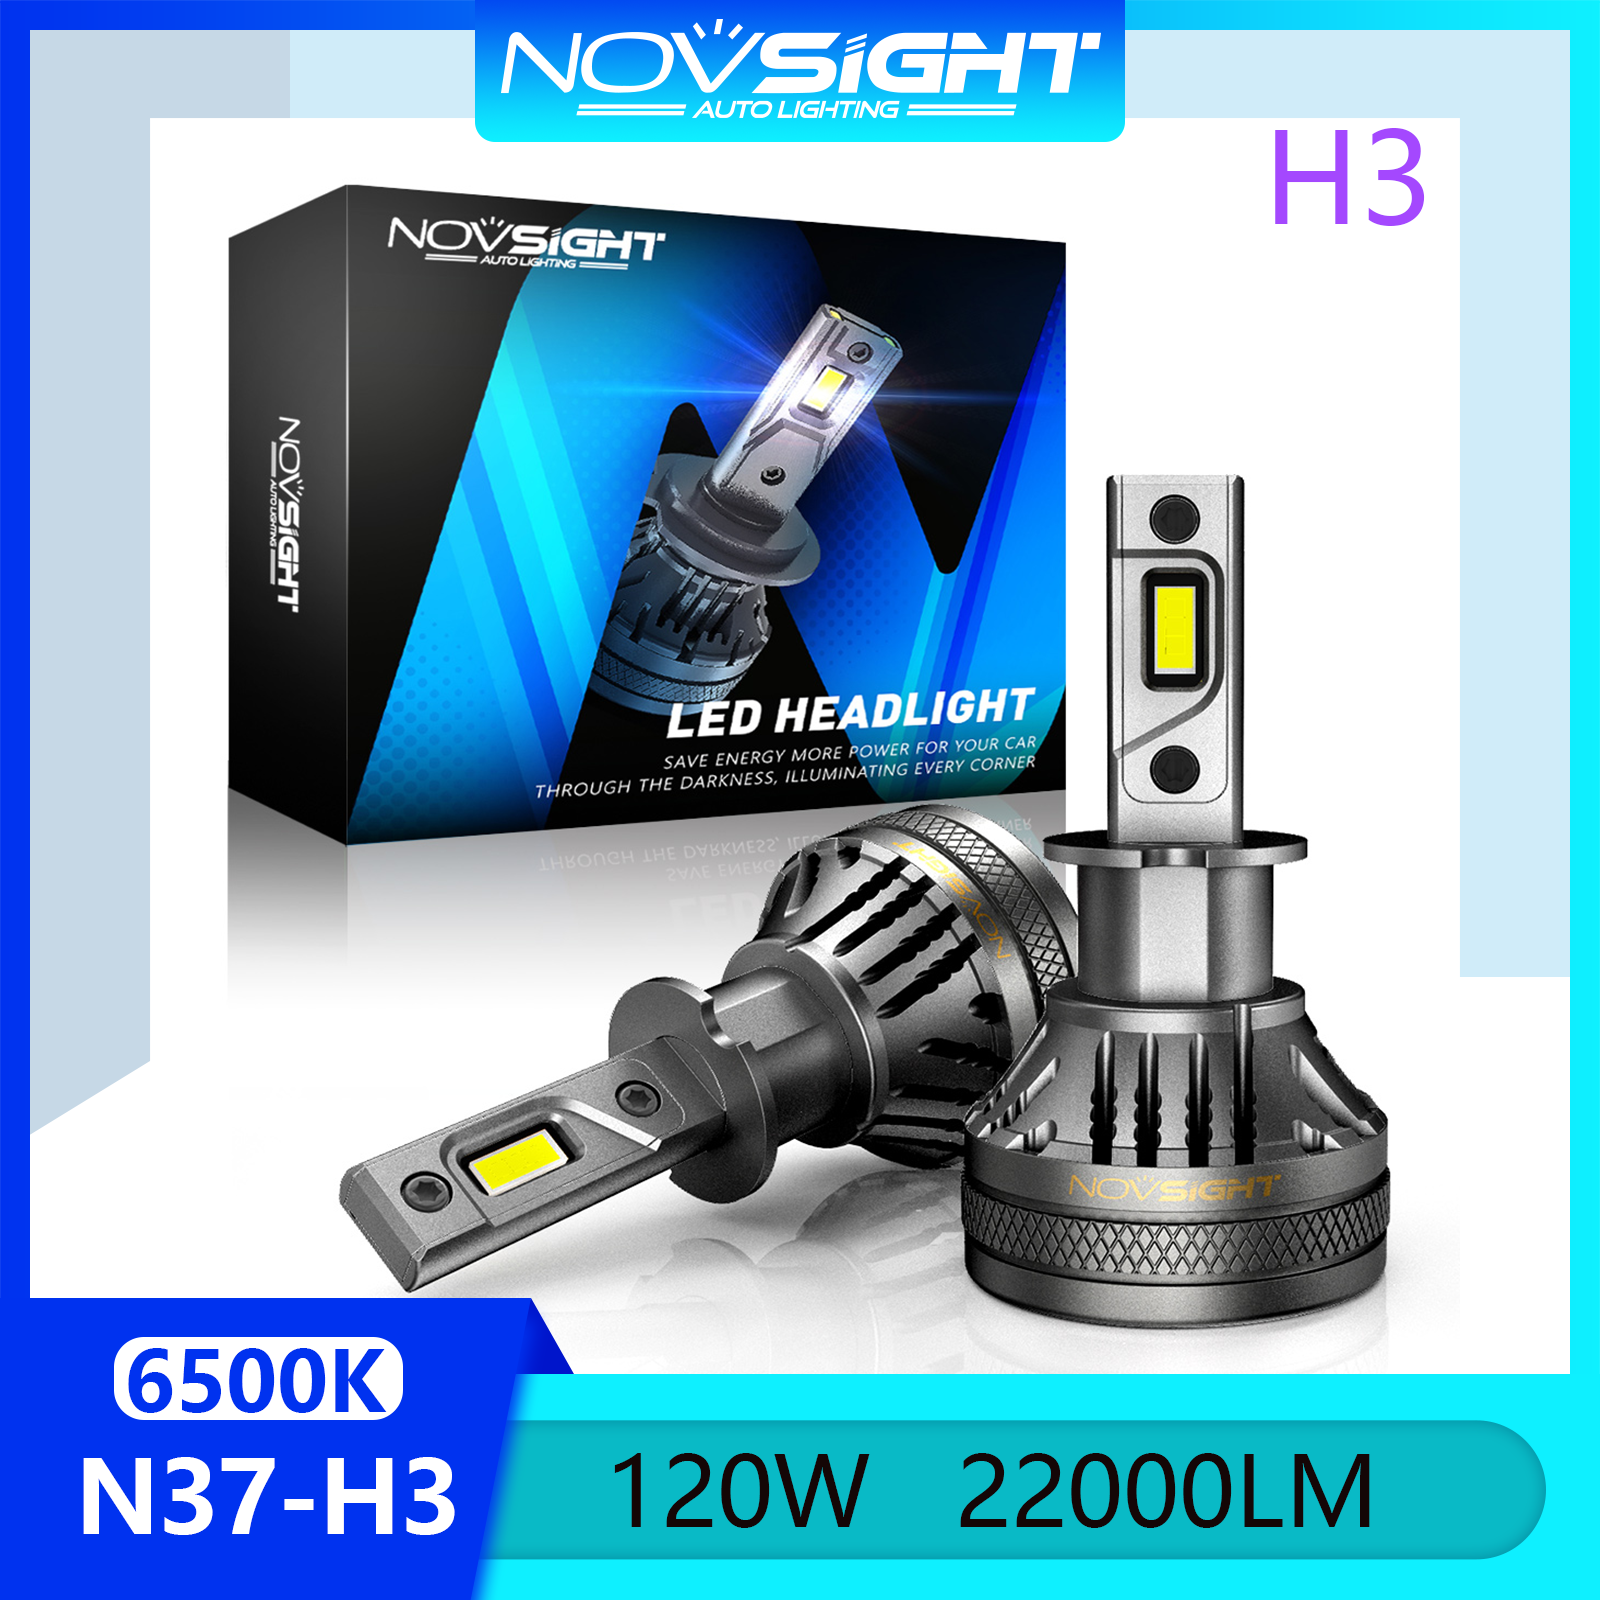 Novsight N37 6500K Đèn LED siêu sáng cho xe ô tô H3 Đèn pha LED Bộ đèn pha Đèn sương mù Ánh sáng cao / Chùm tia nhúng 120W 22000LM Cắm và chạy tại chỗ 1 cặp 2 miếng Bảo hành 2 năm Miễn phí vận chuyển